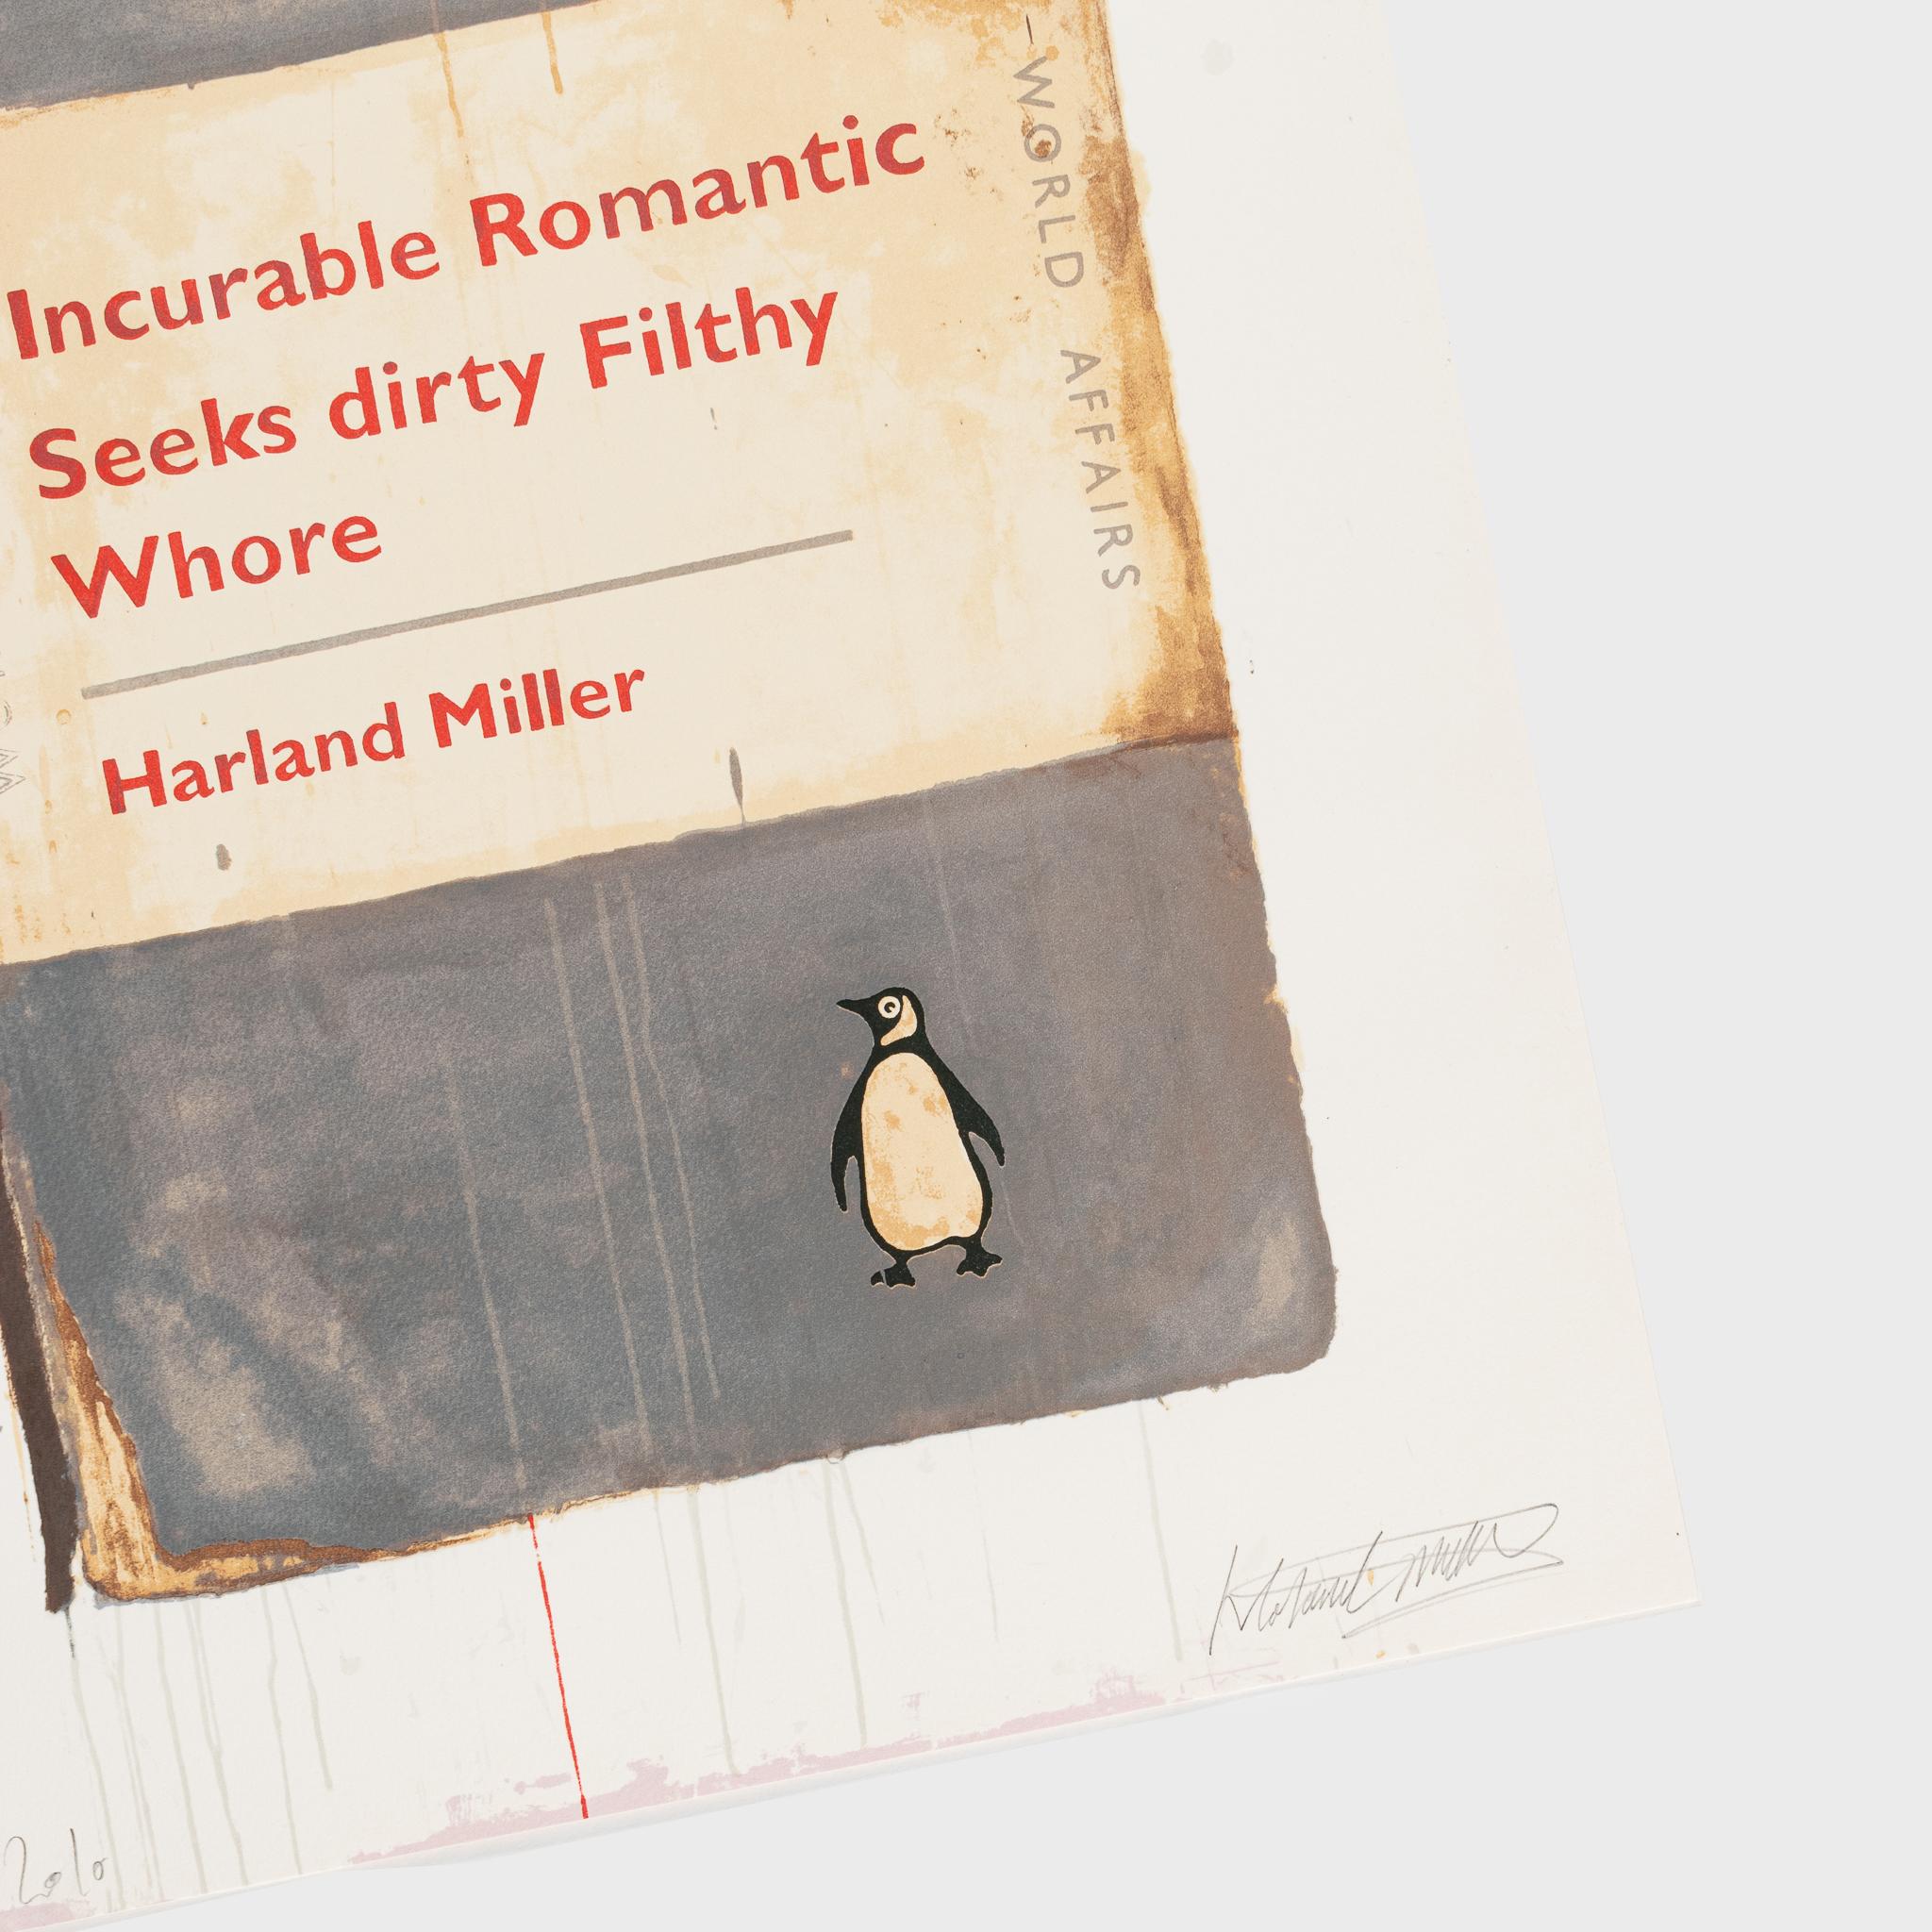 Incroyable Romantic Seeks Dirty Filthy Whore (croisé romantique) - Print de Harland Miller